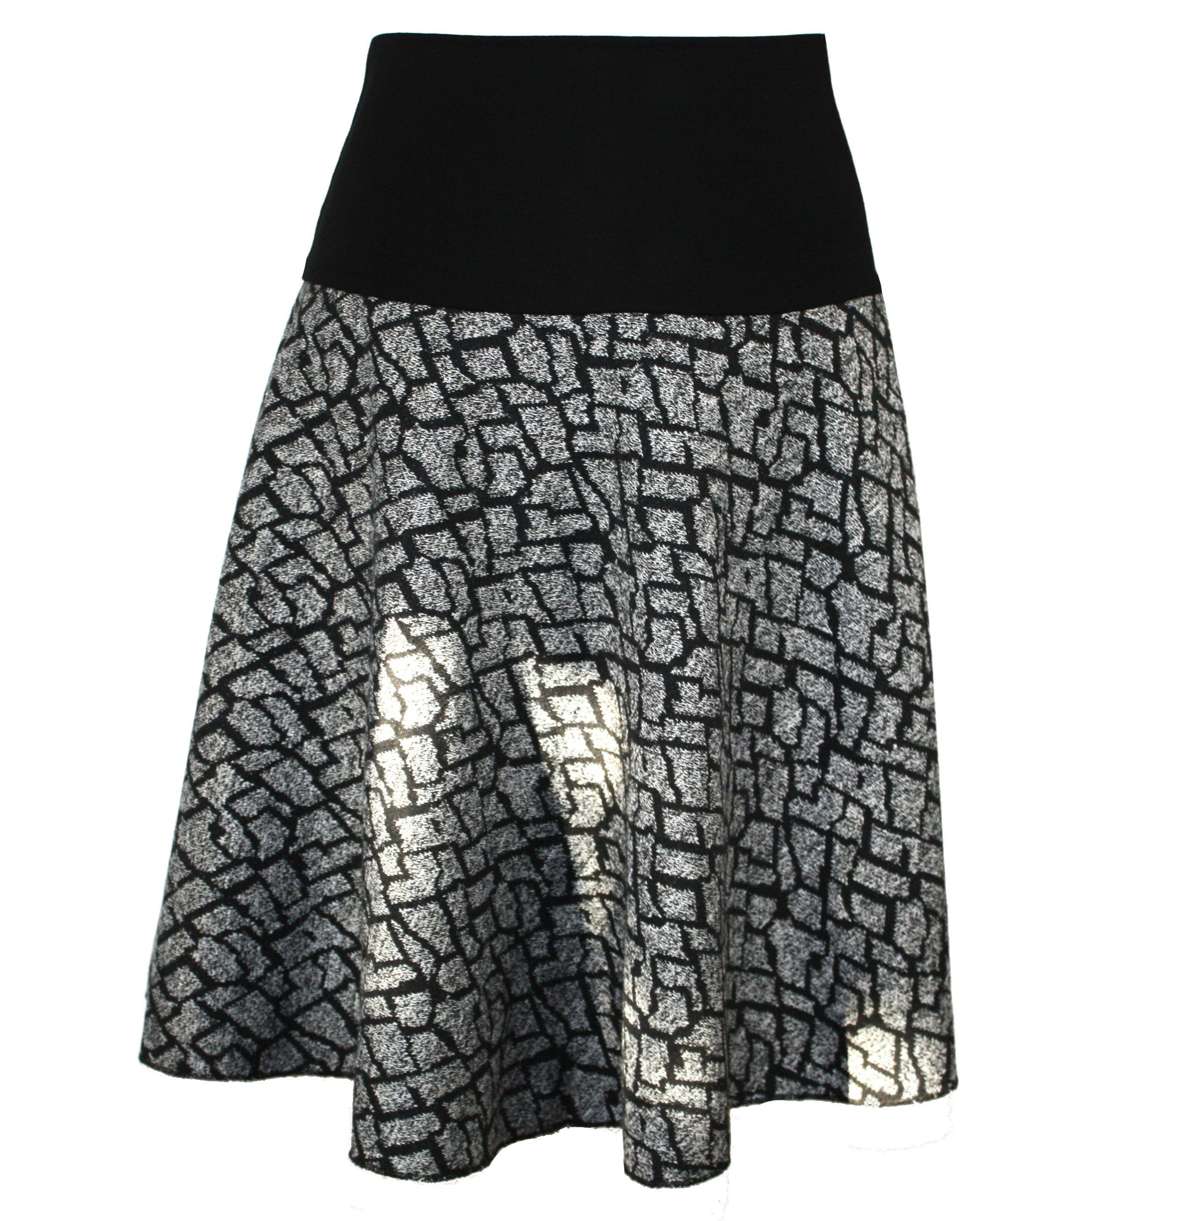 Трикотажная юбка А-силуэта 57см черного цвета, цвета экрю, плотная вязка, эластичный пояс, эластичный пояс